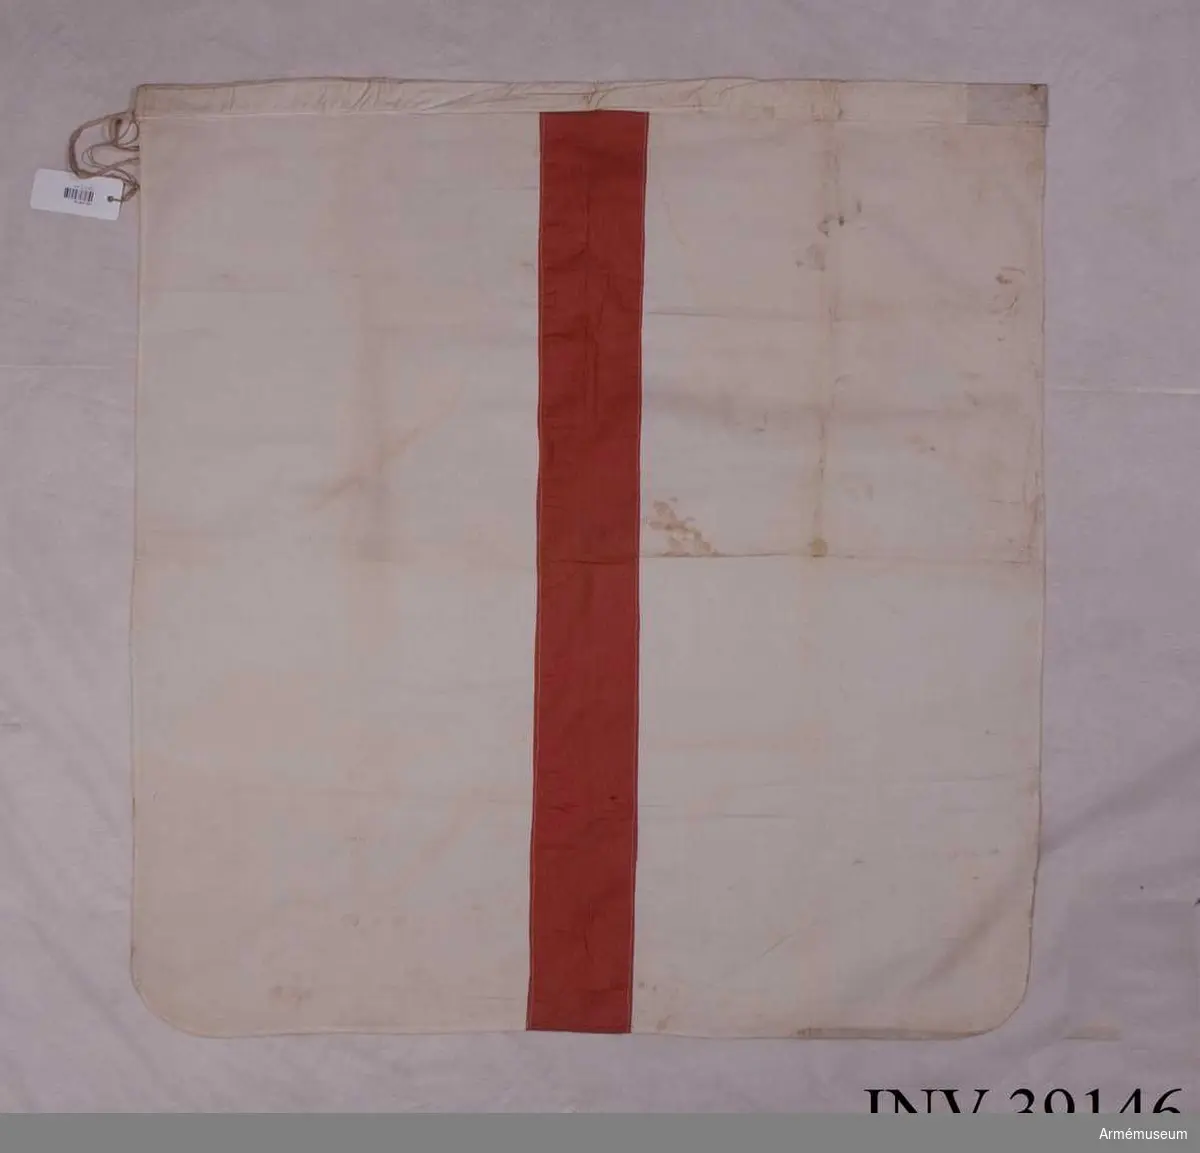 Grupp H III.

Vit flagga med ett rött tvärstreck, 10 cm brett. 
Kanal upptill, 4 cm bred, och band för fastsättning på stången. 
Måttet 87x87 cm är exklusive kanal.Enligt GK 1981.